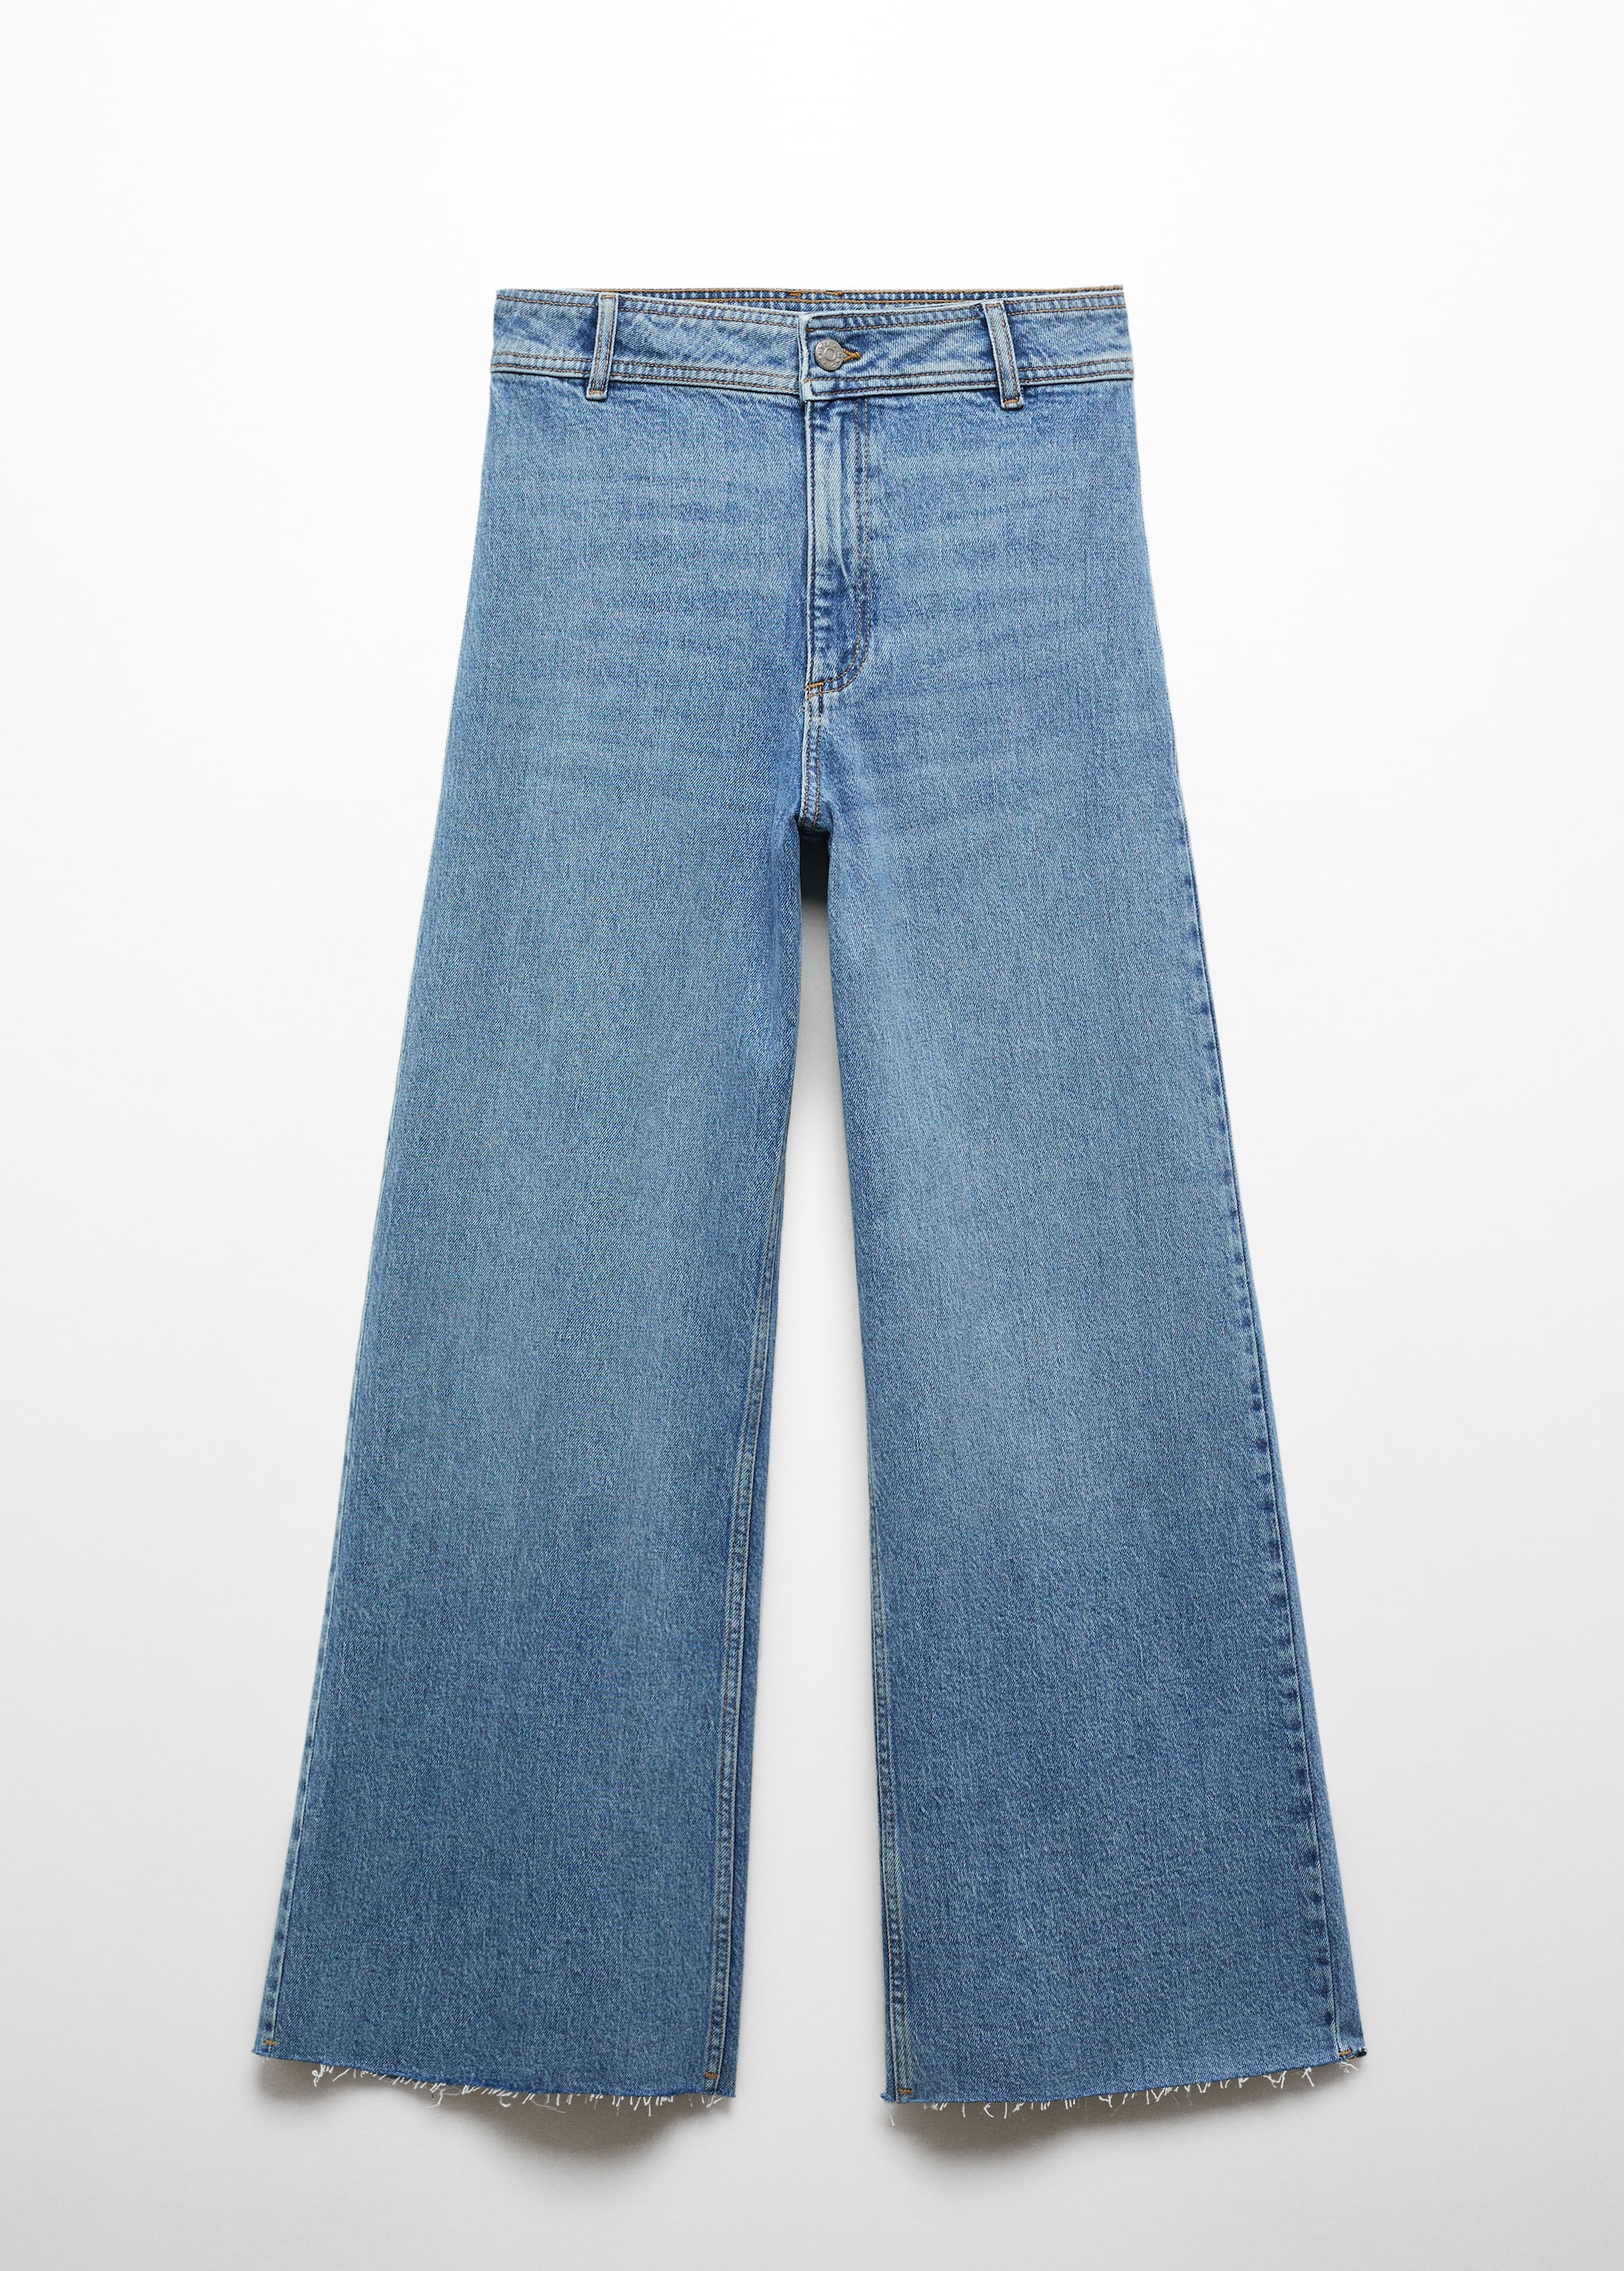 Jeans Catherin culotte tiro alto - Artículo sin modelo